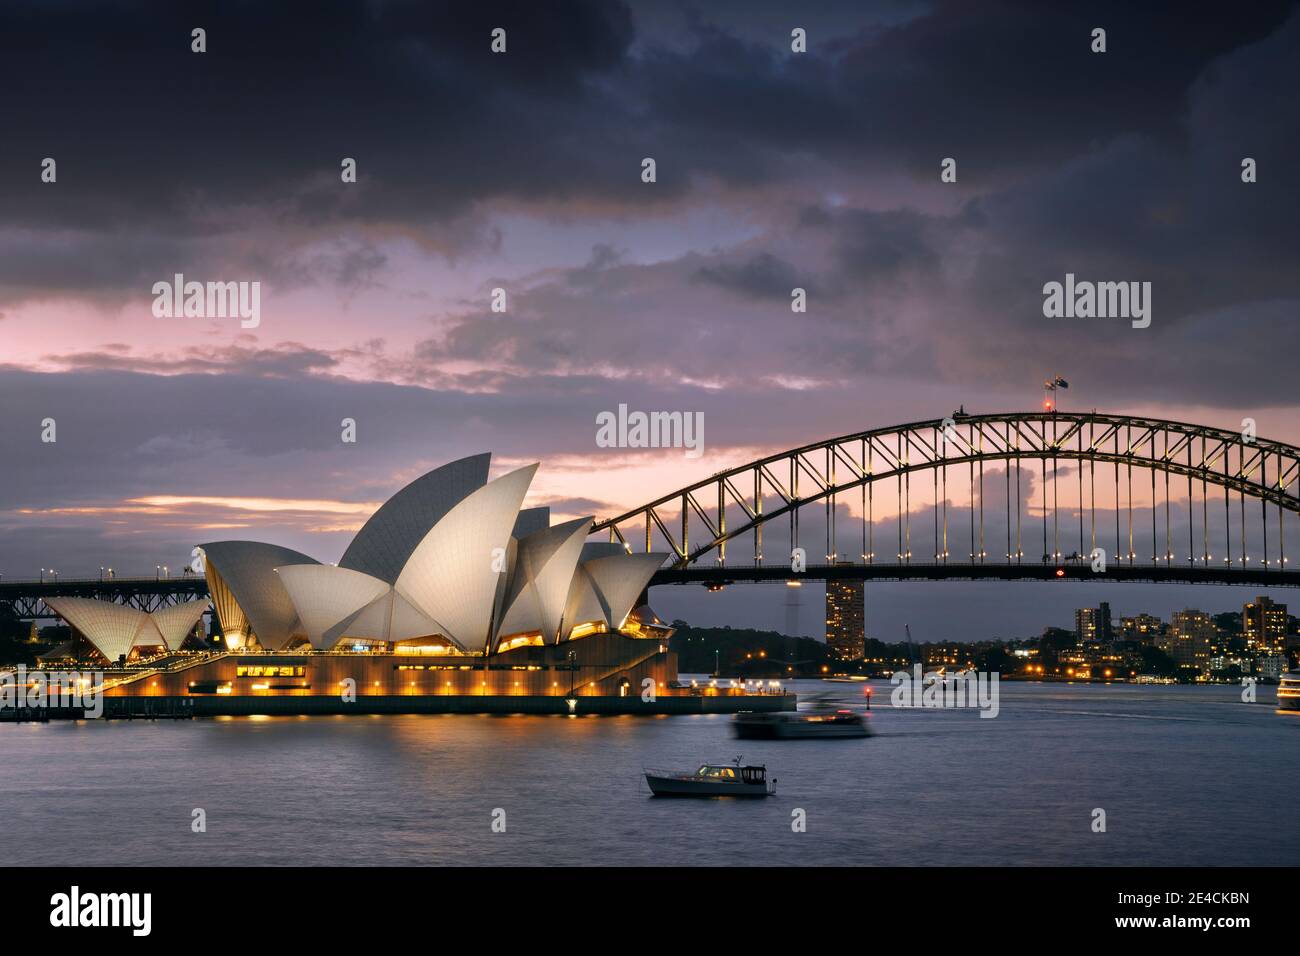 L'Opéra de Sydney illuminé avec Harbour Bridge au coucher du soleil Banque D'Images